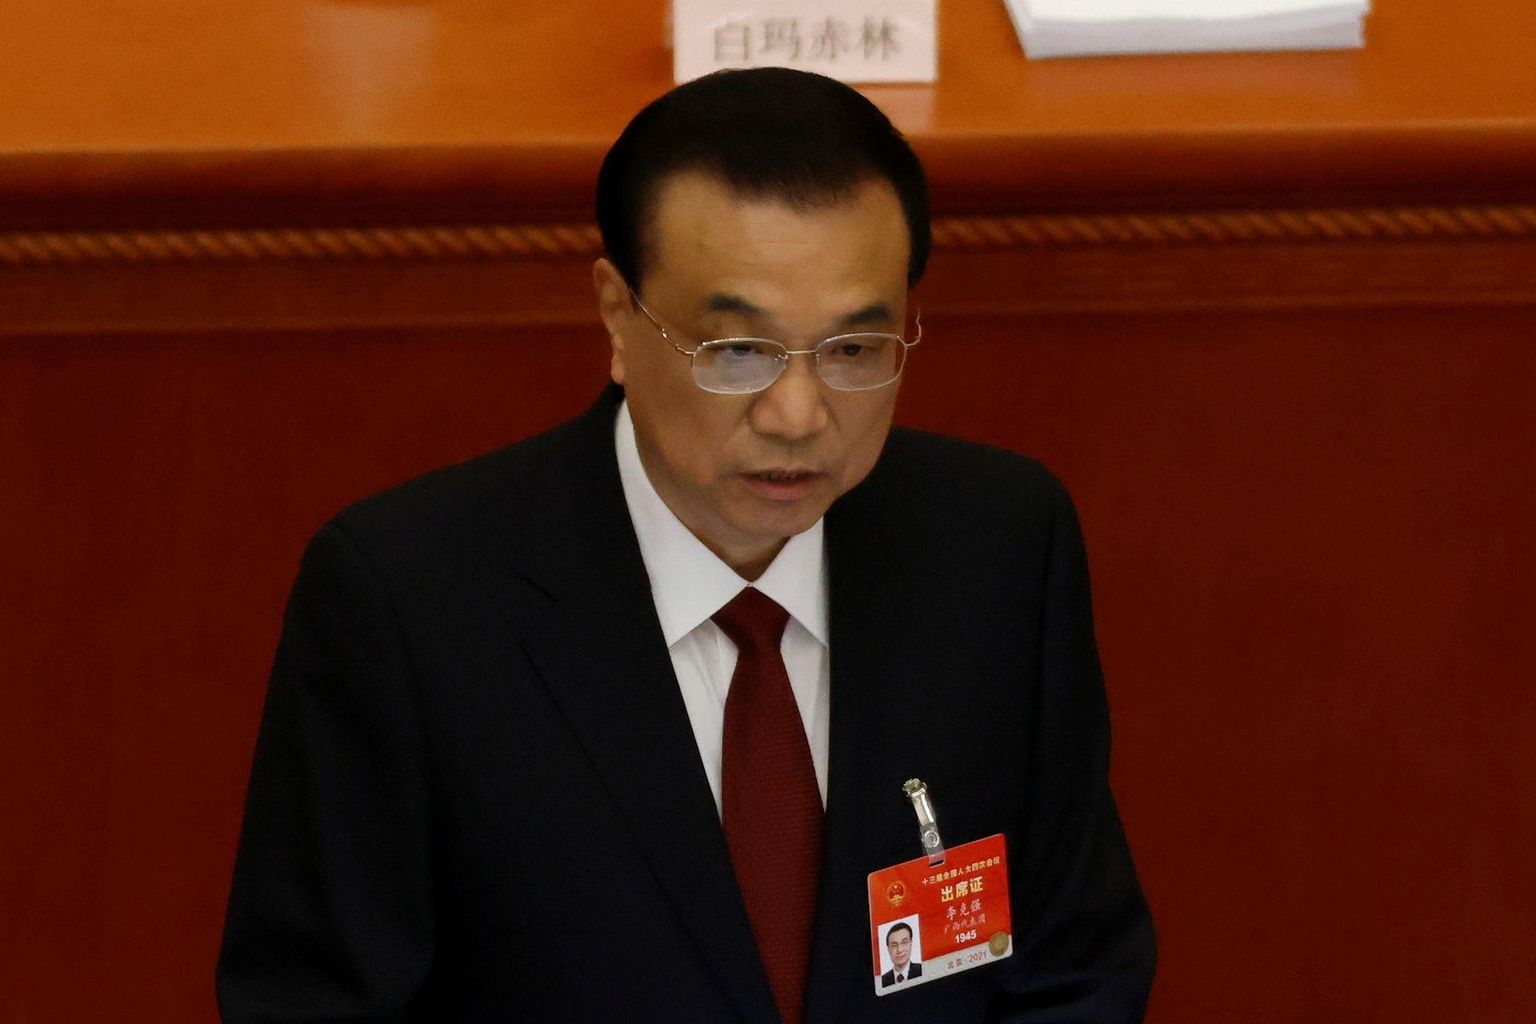 Hiina peaminister Li Keqiang esinemas rahvakongressi istungijärgul Pekingis.